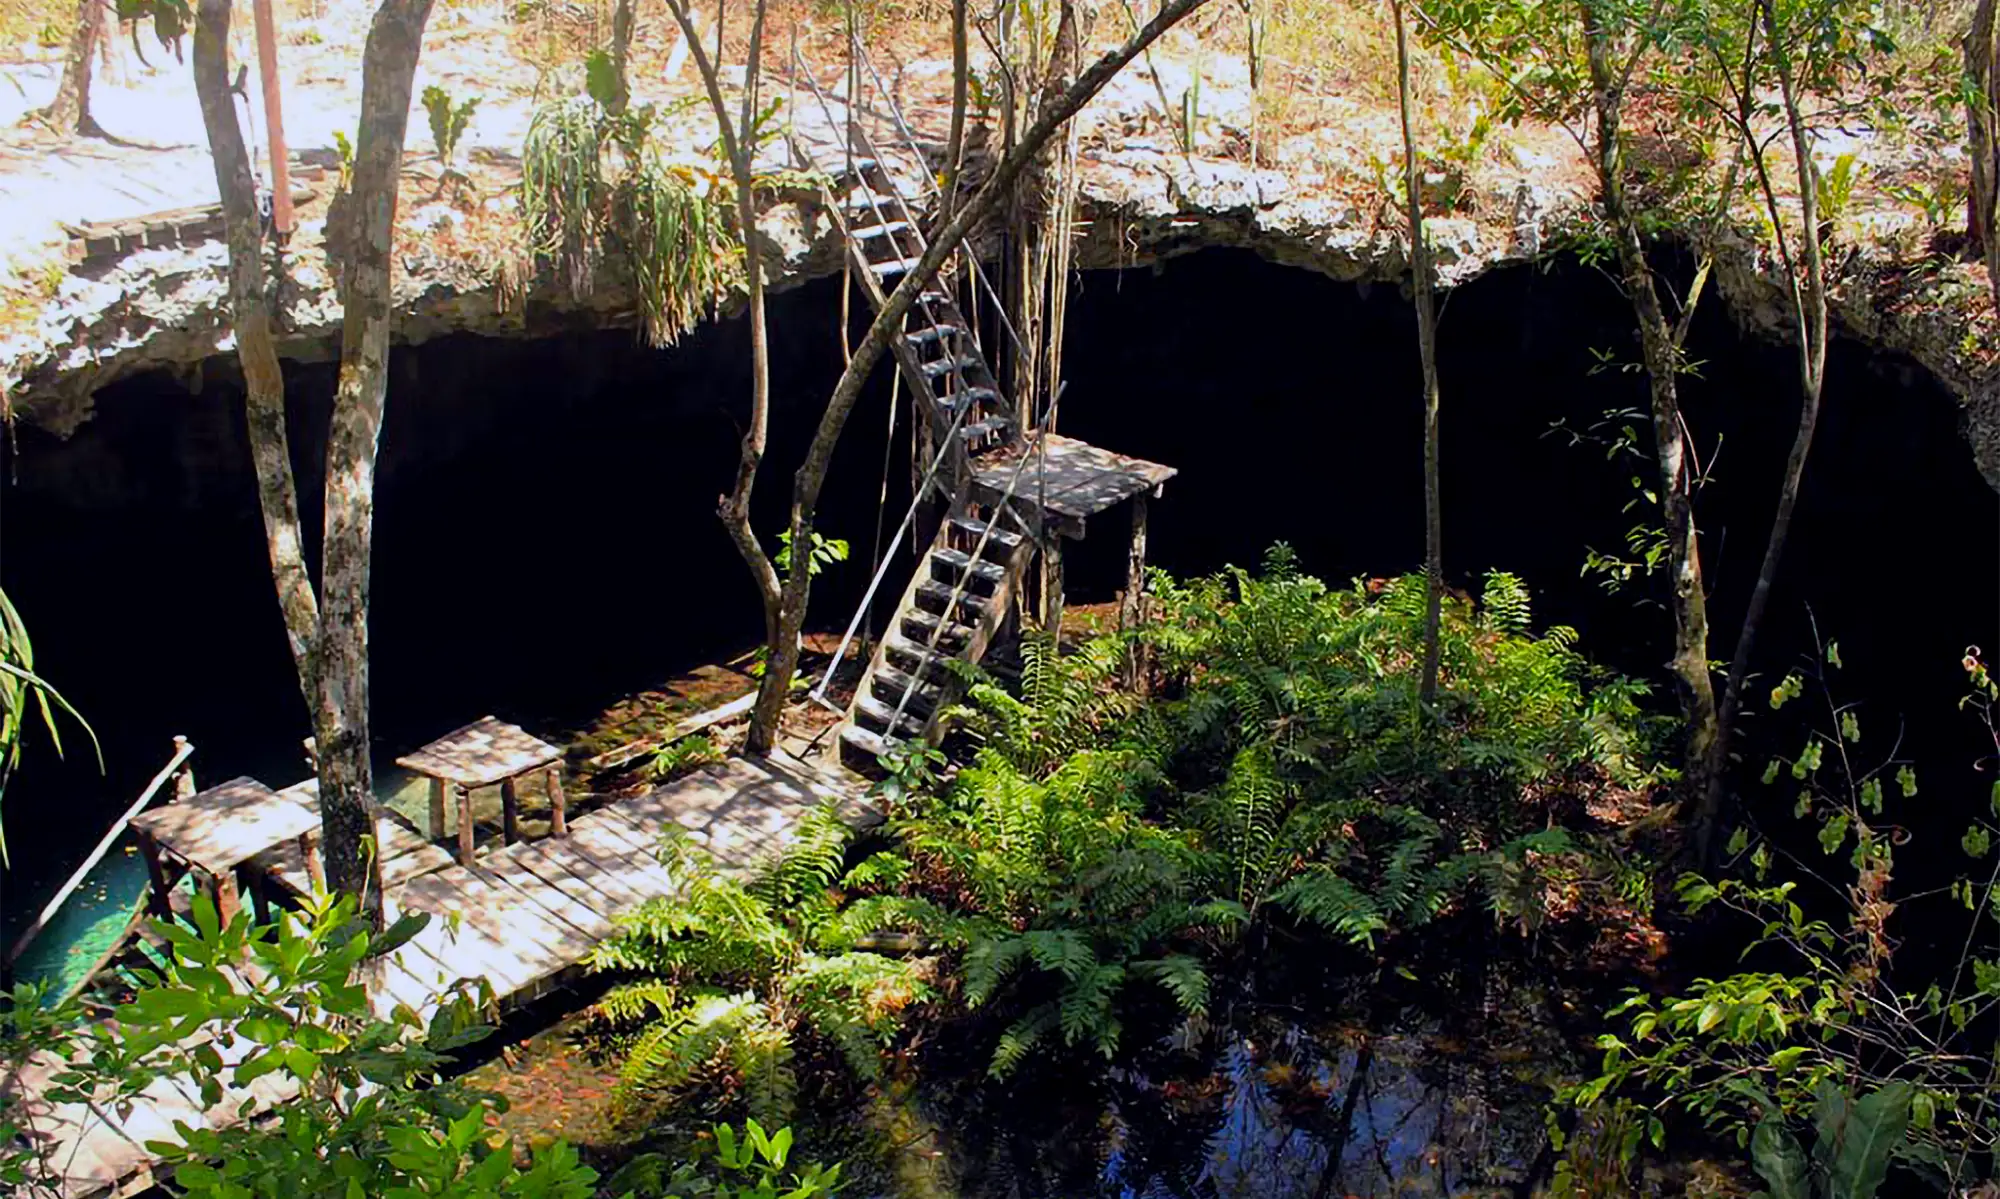 Dreamgate Cenote entrance